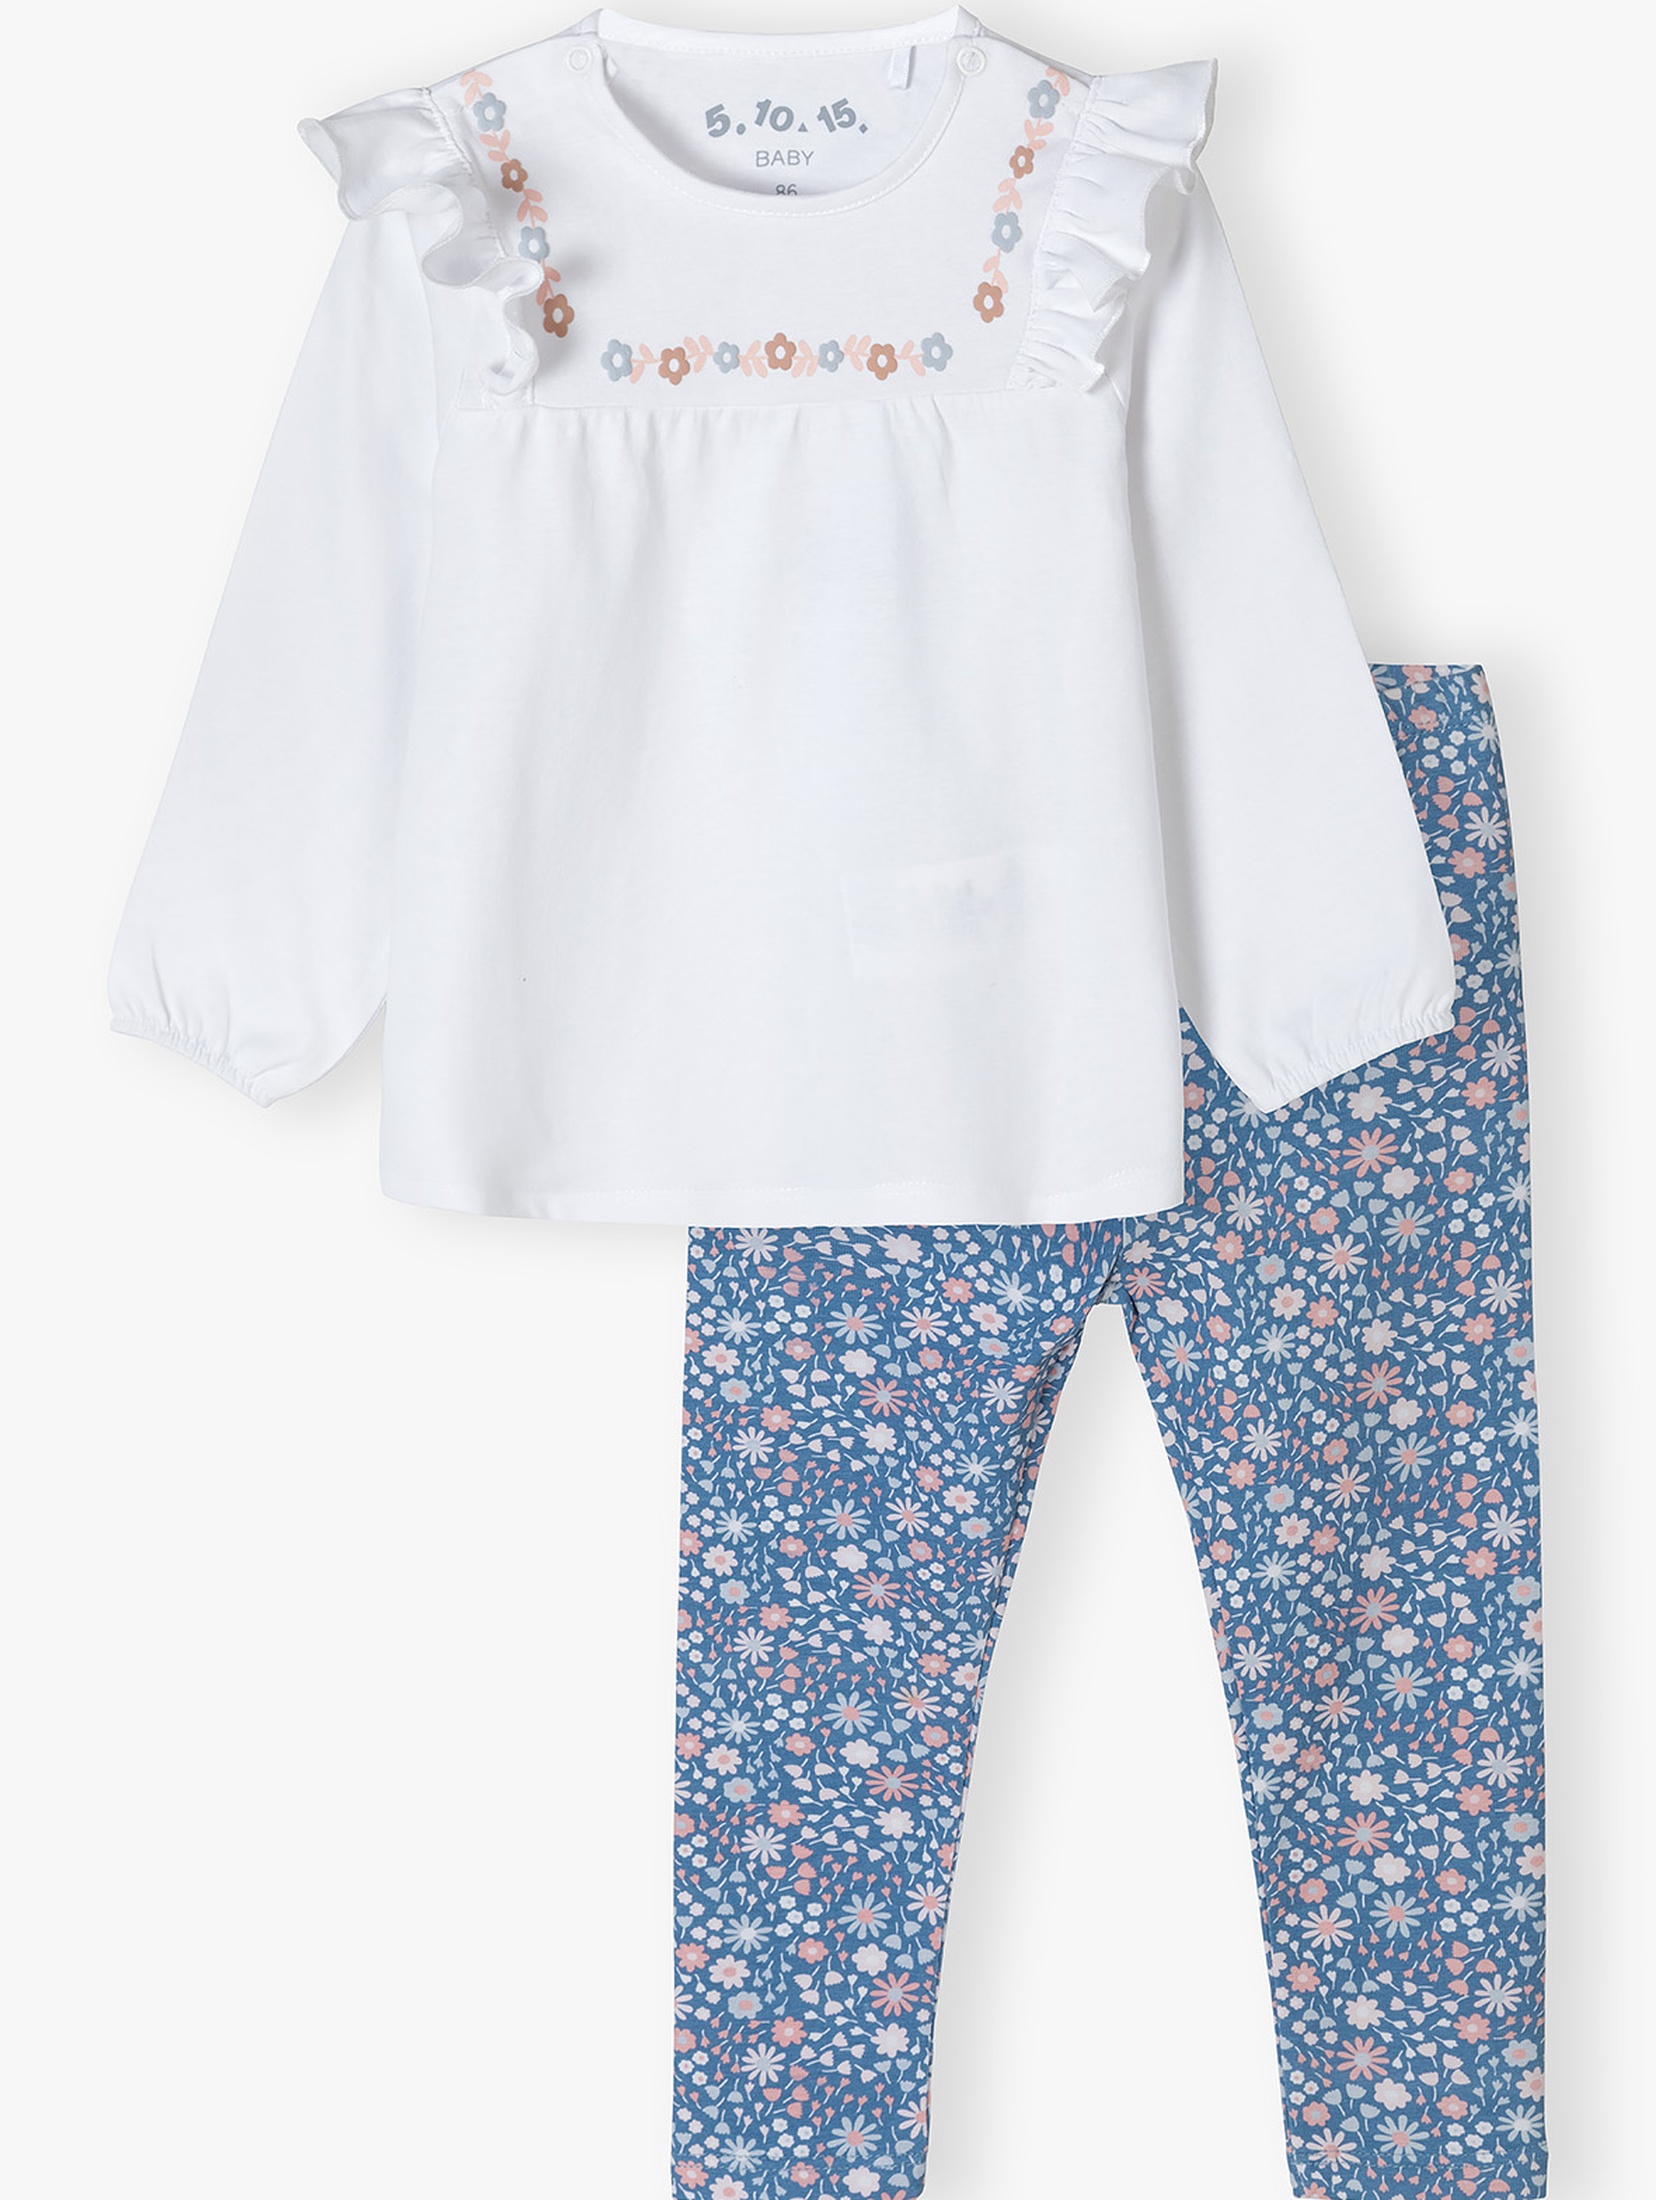 Bawełniany komplet niemowlęcy - bluzka + legginsy